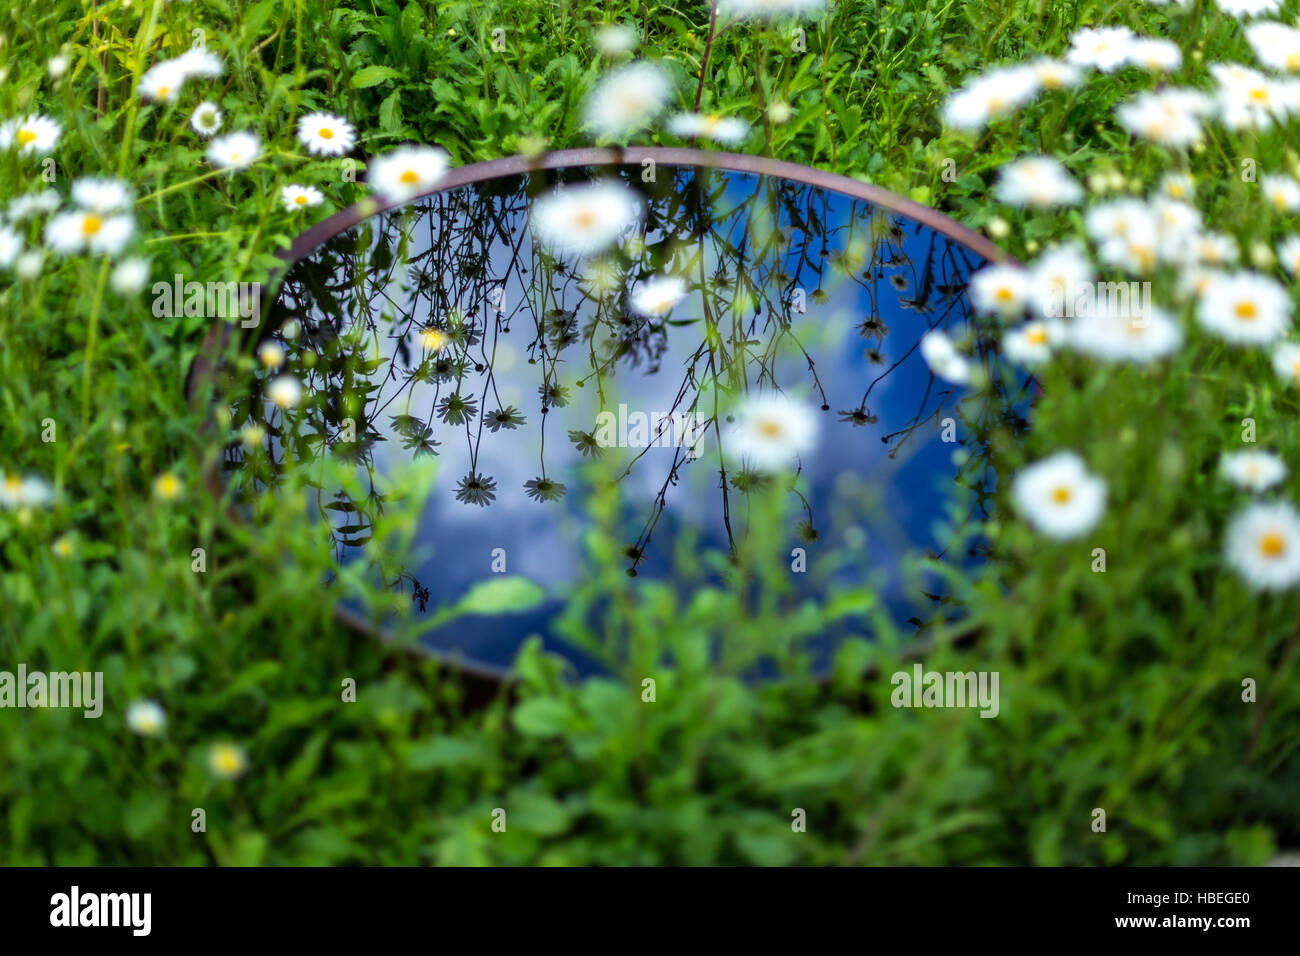 Reflet de la cuvette d'eau dans le jardin de Vision mondiale au RHS Hampton Court Palace Flower Show 2016 Banque D'Images